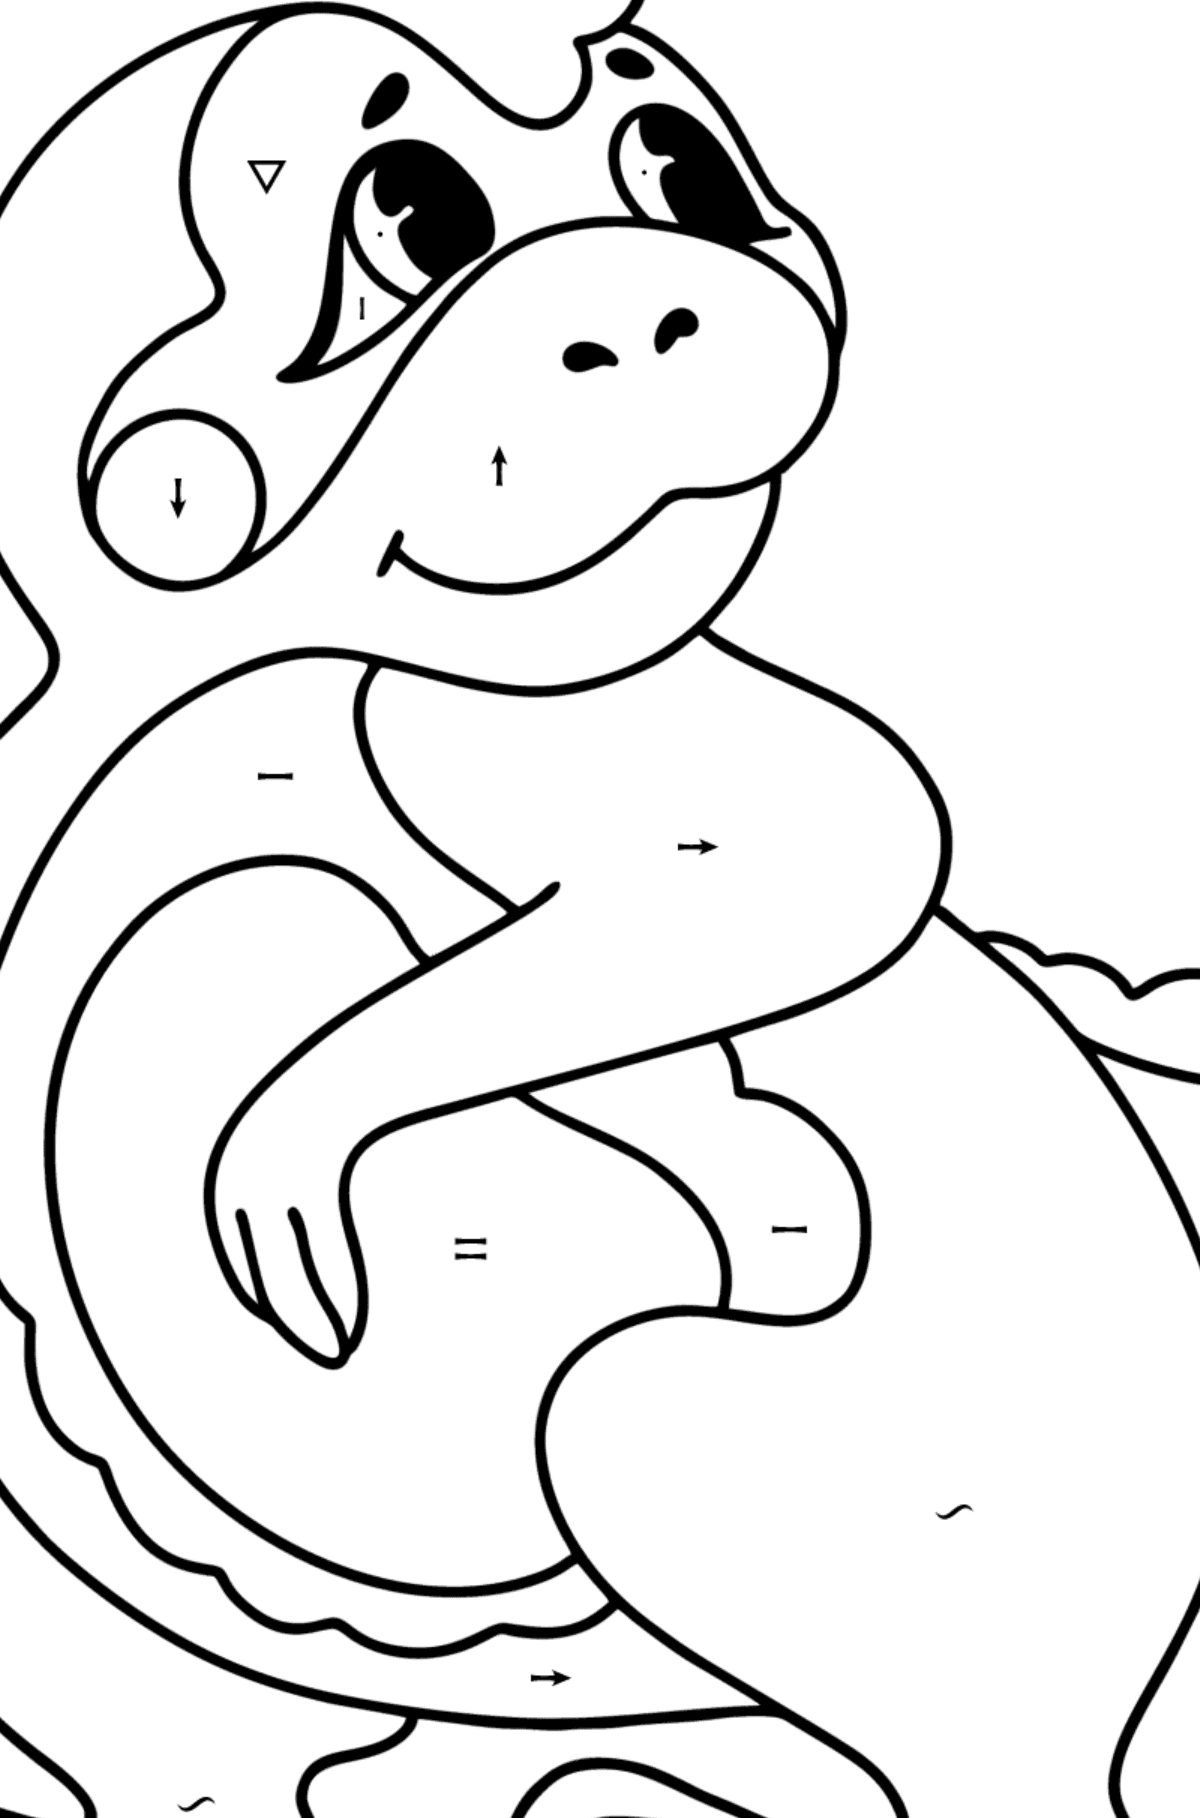 Dibujo de Bebé dragón para colorear - Colorear por Símbolos para Niños